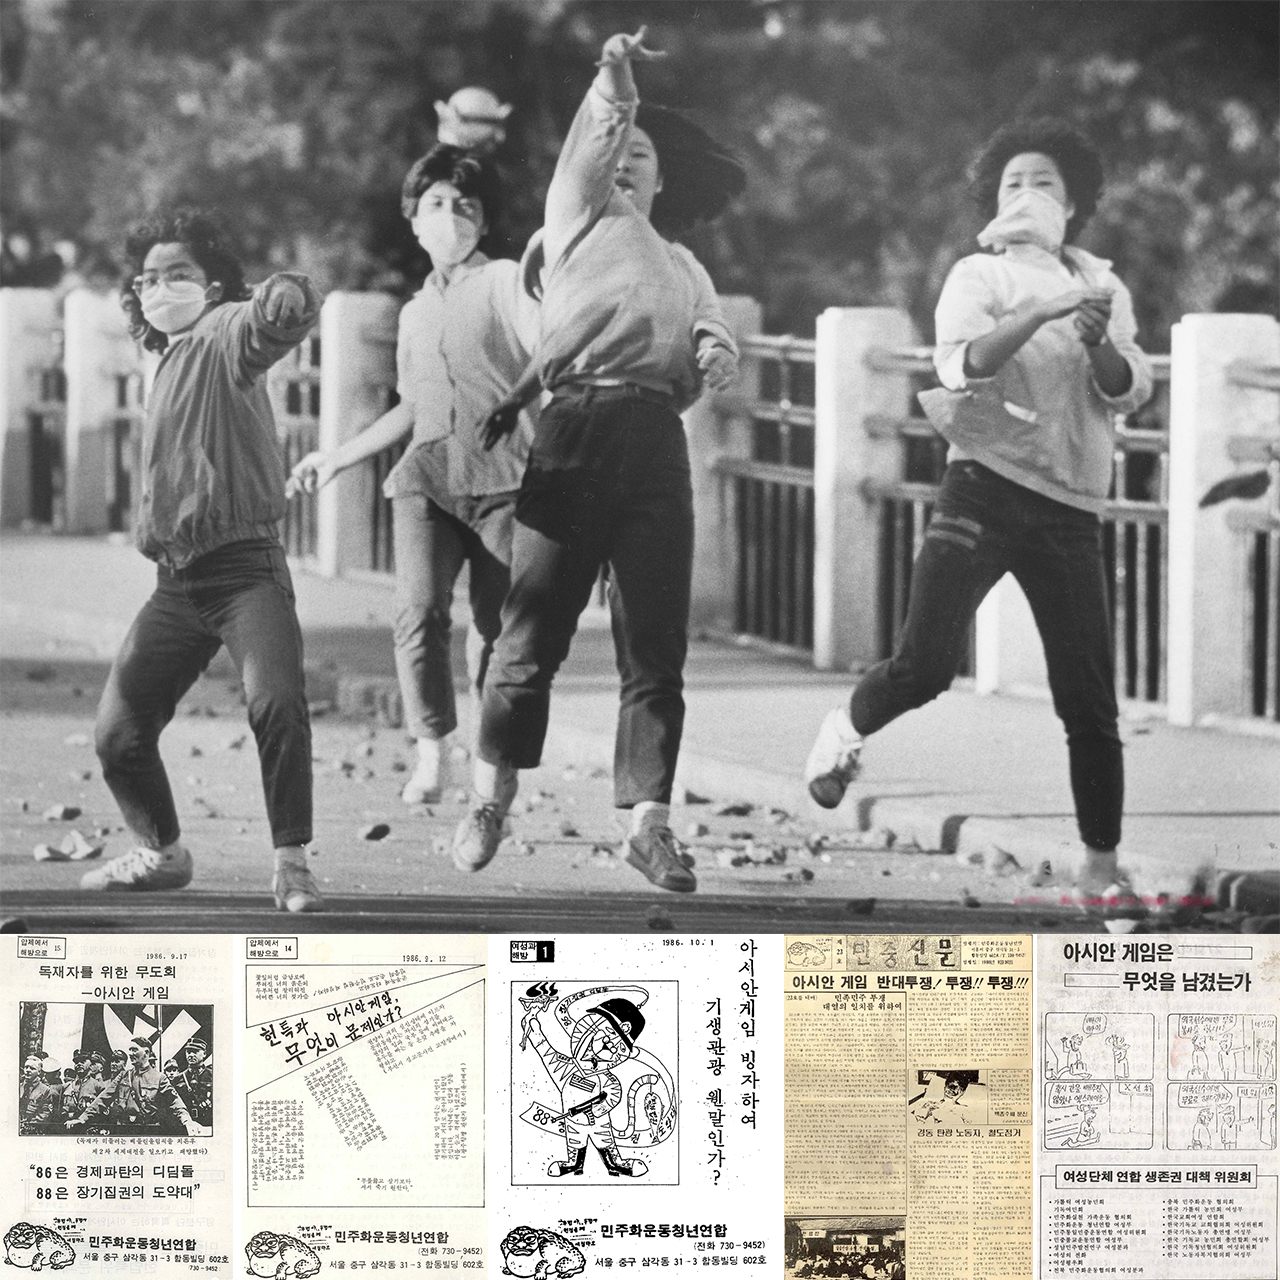 1986년 9월 23일 이화여대 학생들이 아시안게임개최 결사반대 교내 시위를 하고 있다. 아래는 민청련에서 제작한 아시안게임 반대를 담은 여러 가지 전단지와 신문들